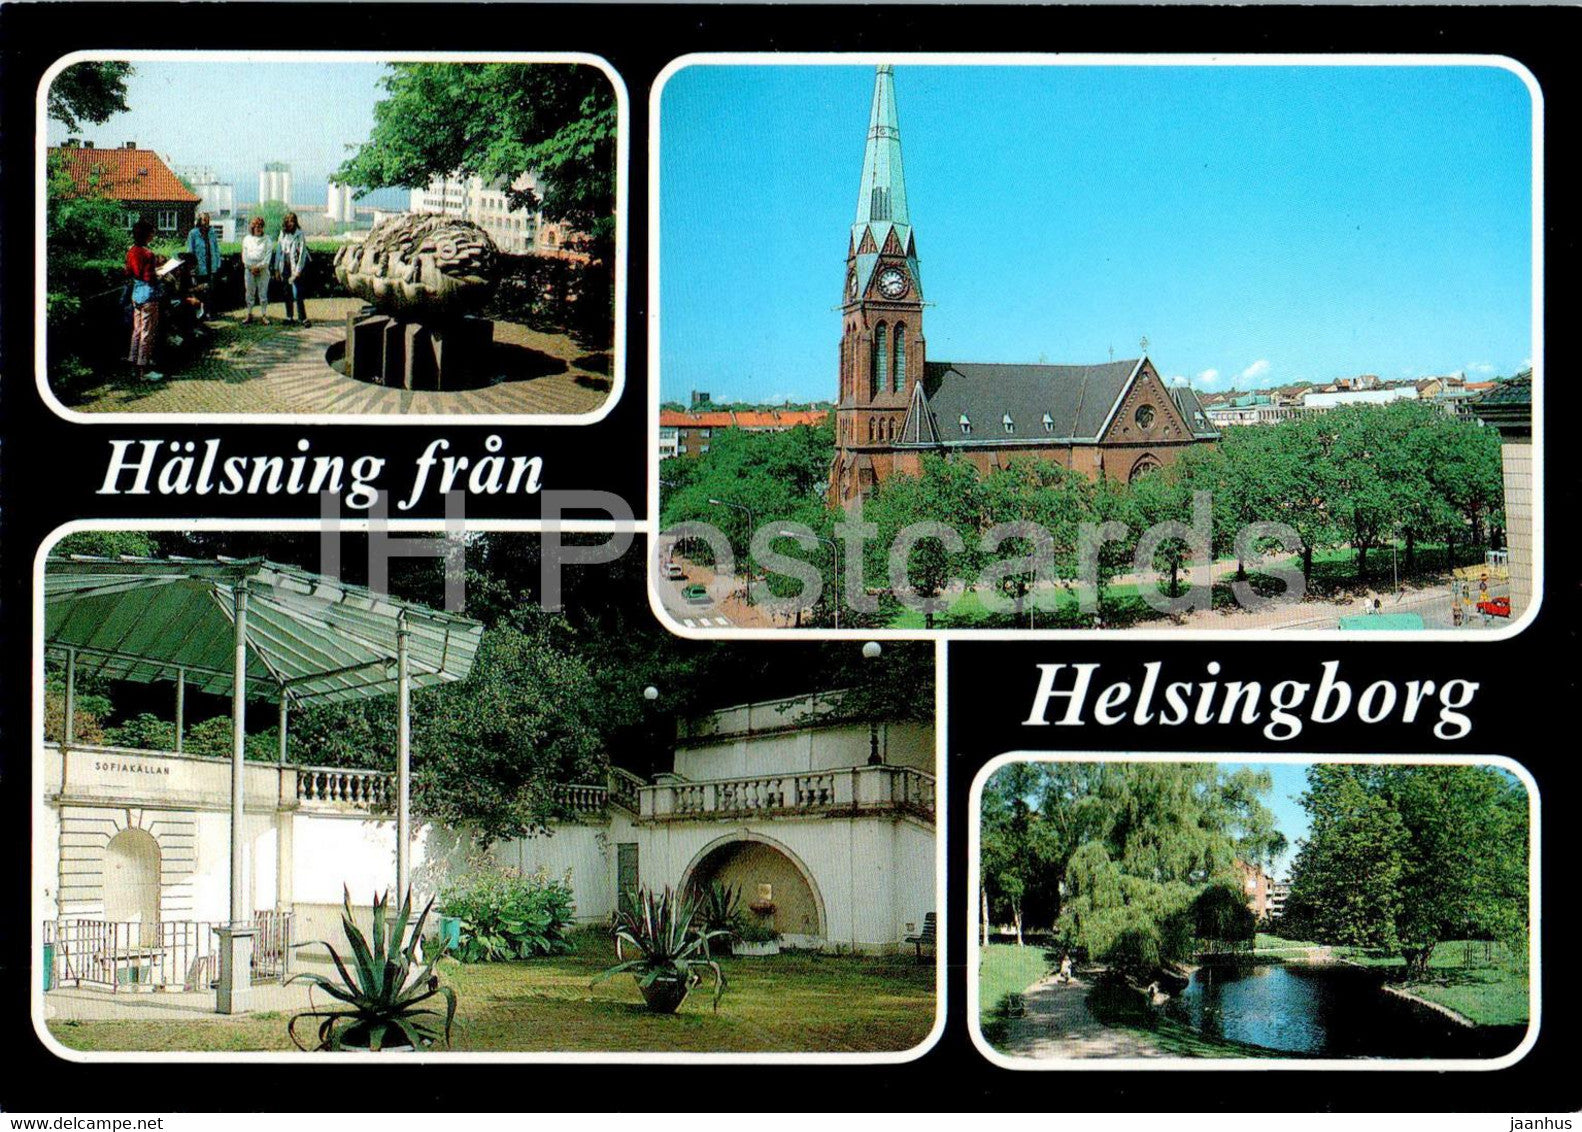 Halsning fran Helsingborg - multiview - Sweden - unused - JH Postcards